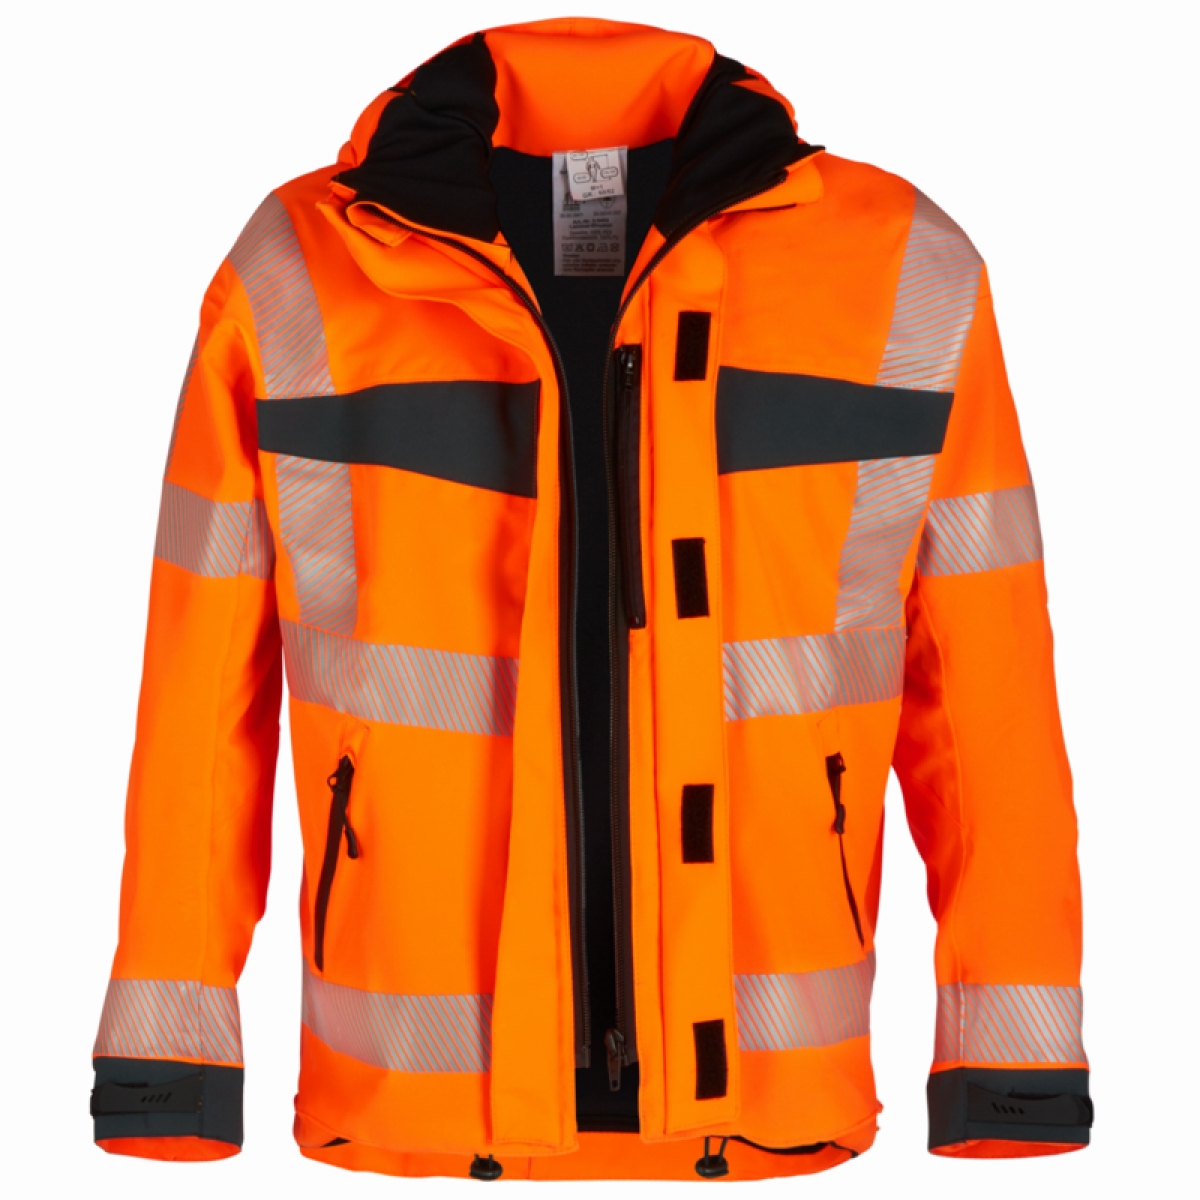 WATEX-Warnschutz, Warn-Wetterschutz-Blouson, 200 g/m, orange/dunkelgrn